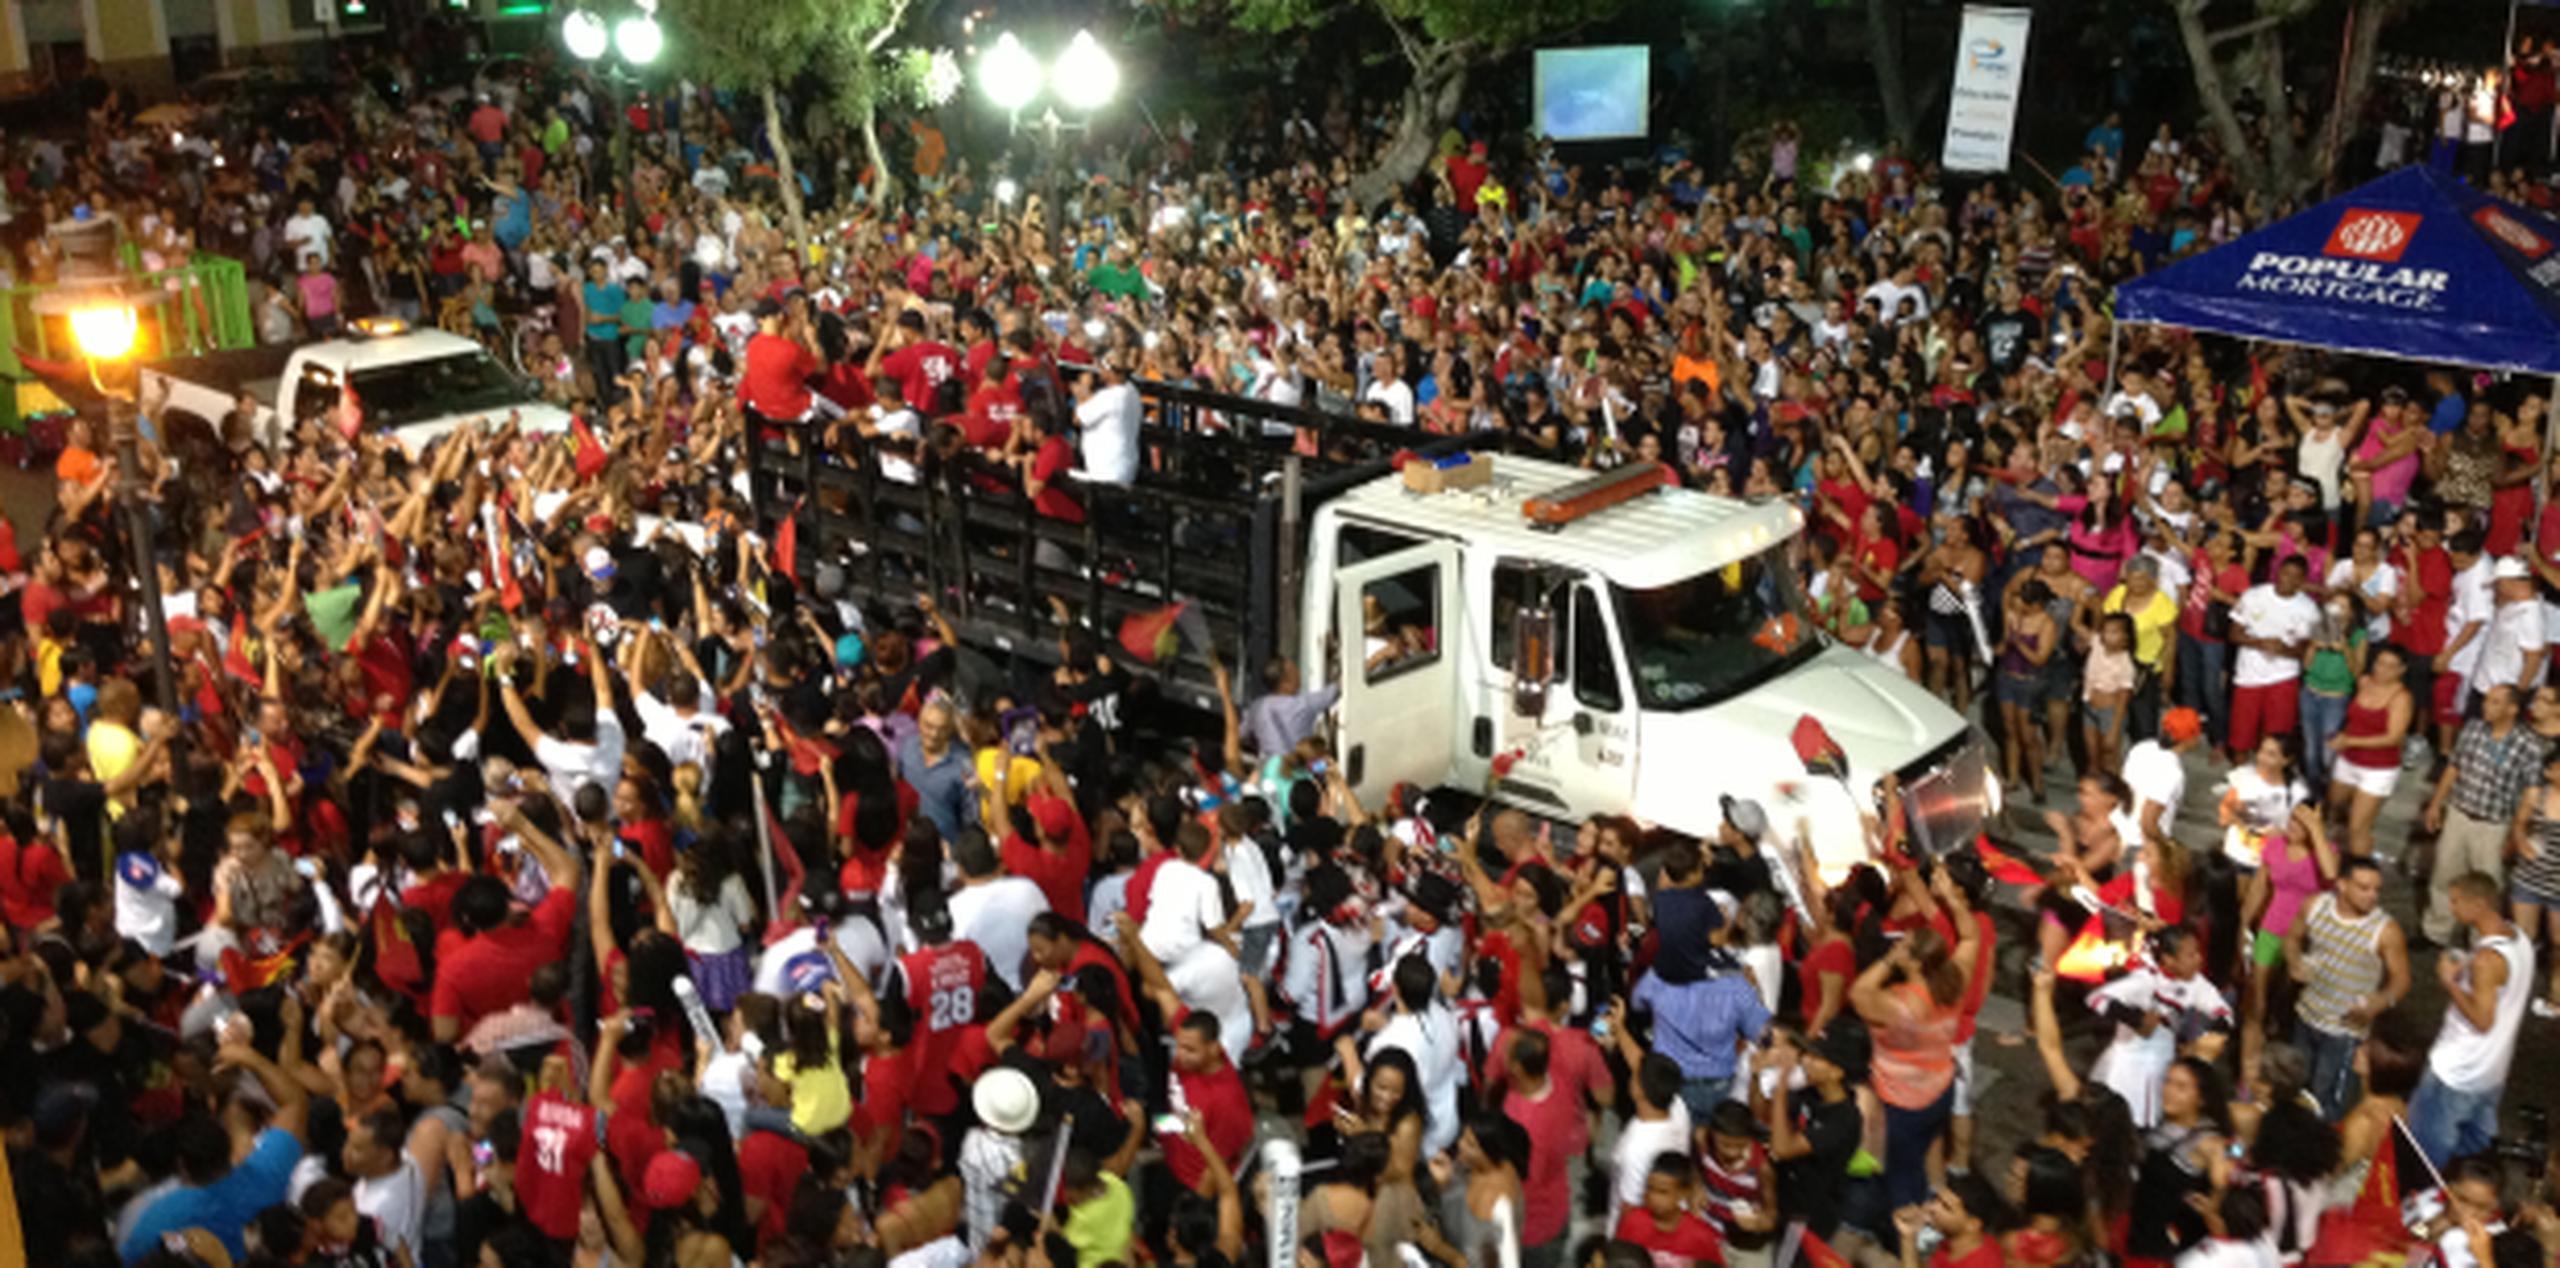 Los seguidores de los Leones escoltaron y celebraron a sus jugadores hasta llegar a la Plaza las Delicias en Ponce, donde el municipio preparó tremenda celebración. (Suministrada)